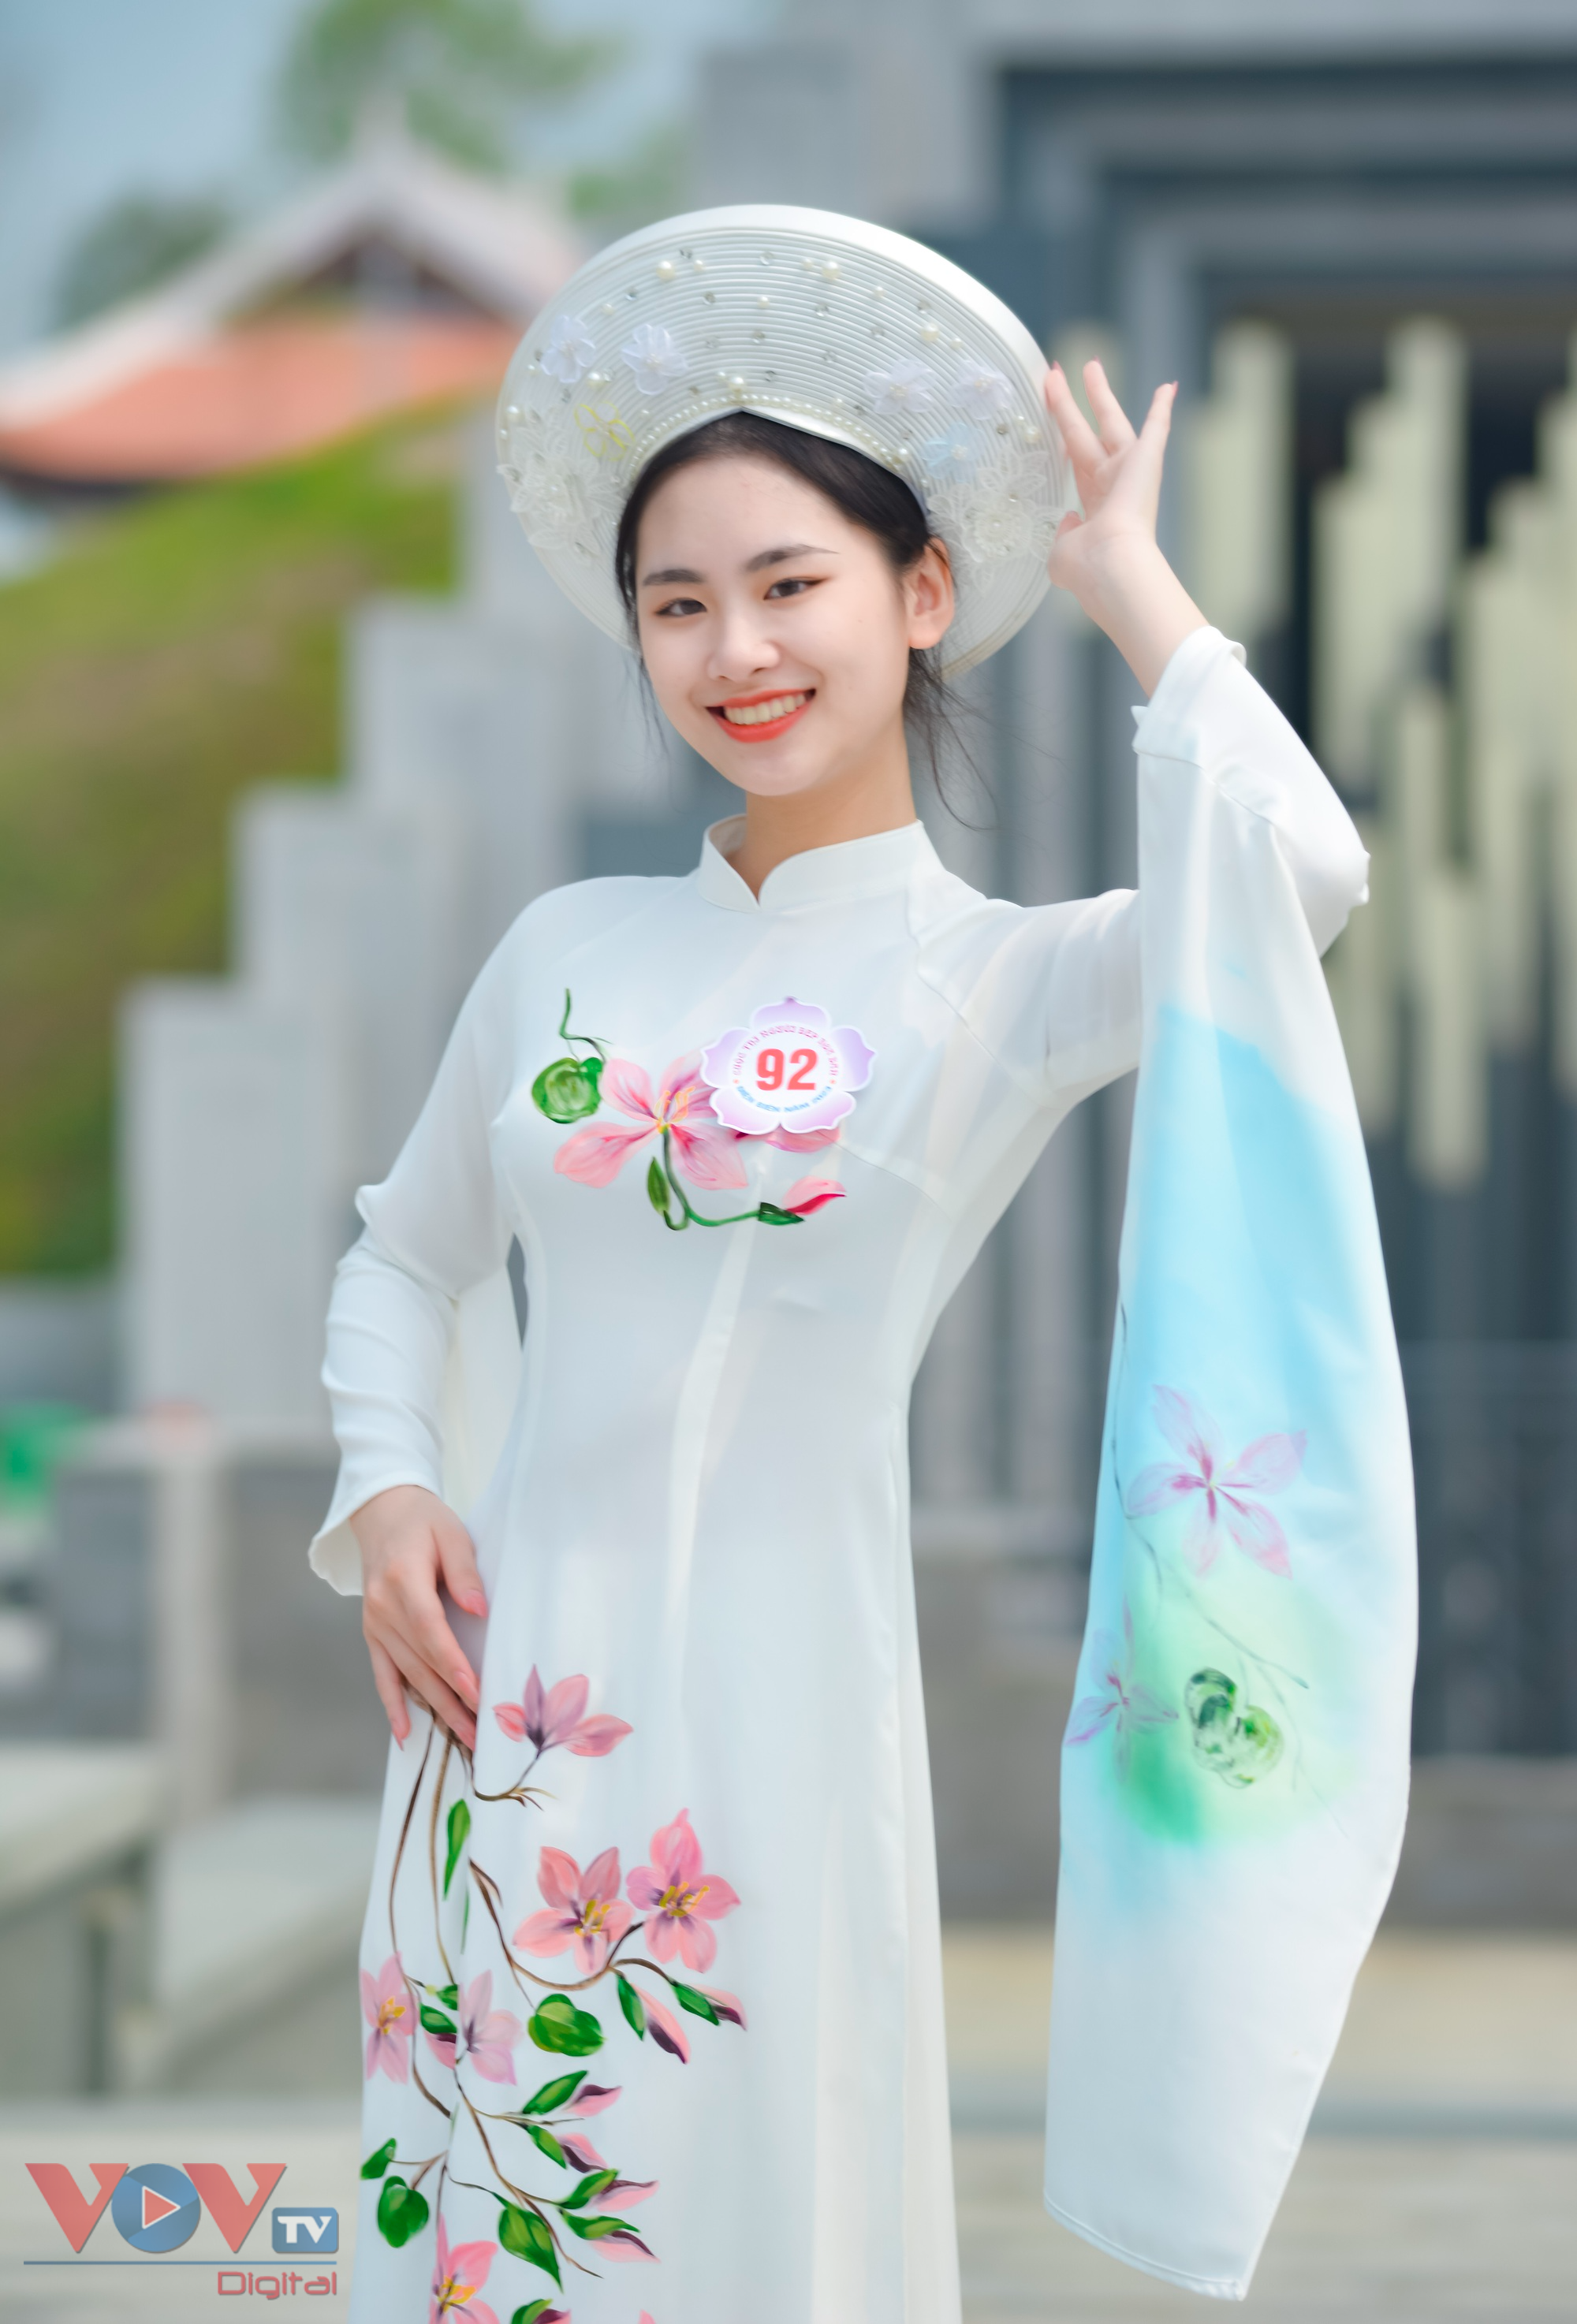 Chùm ảnh: Cận cảnh nhan sắc Người đẹp Hoa Ban năm 2023 tại Điện Biên - Ảnh 8.